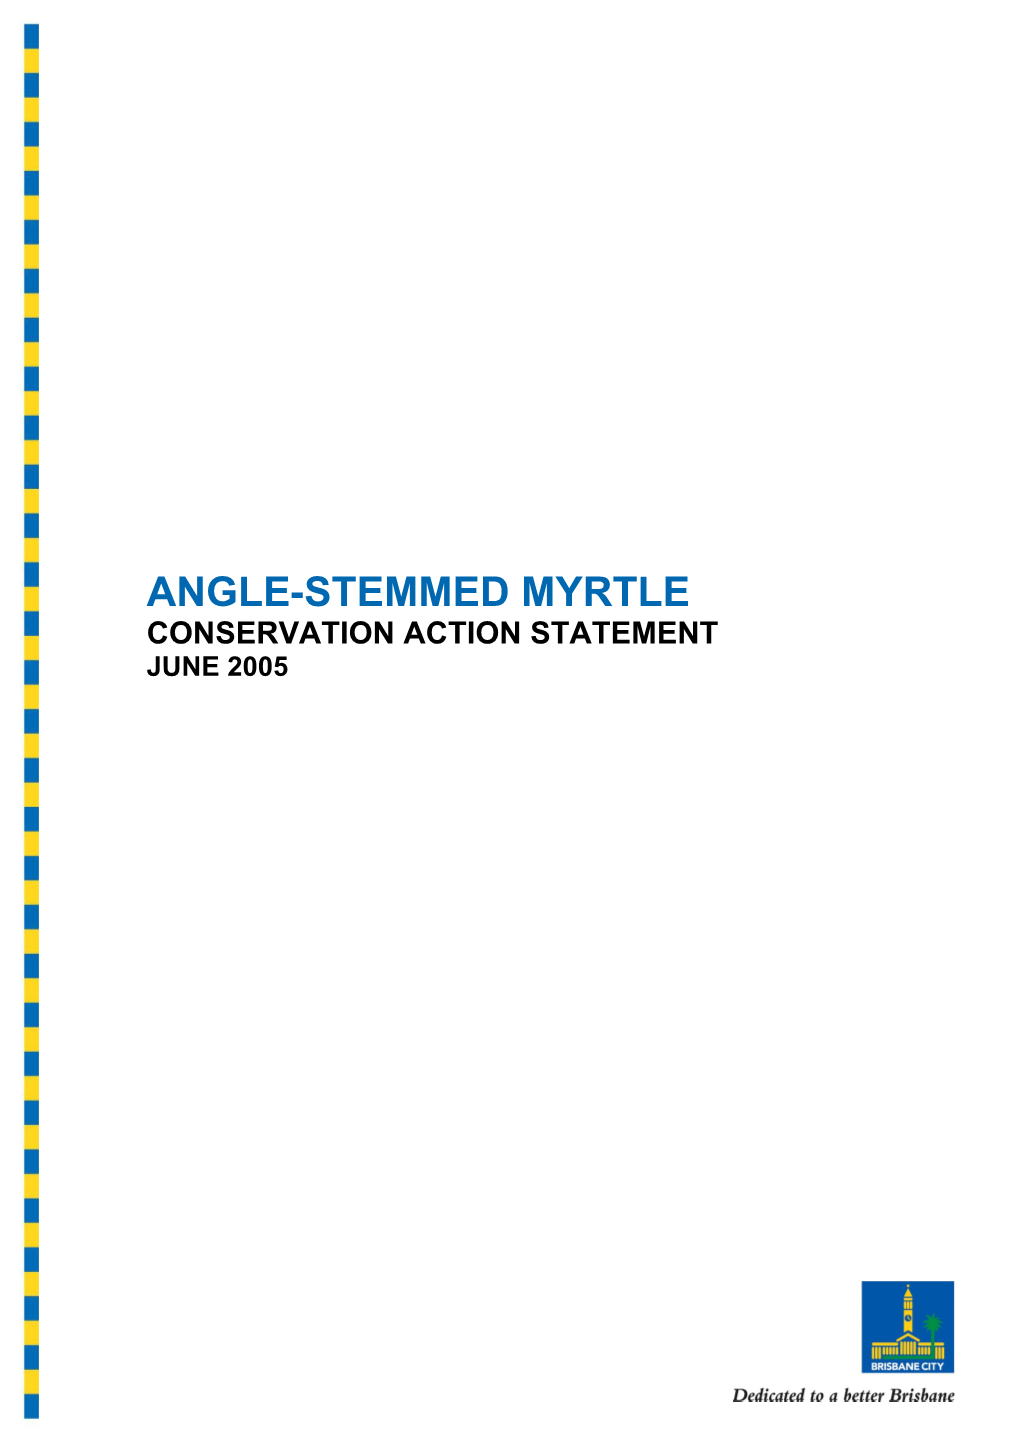 Angle-Stemmed Myrtle